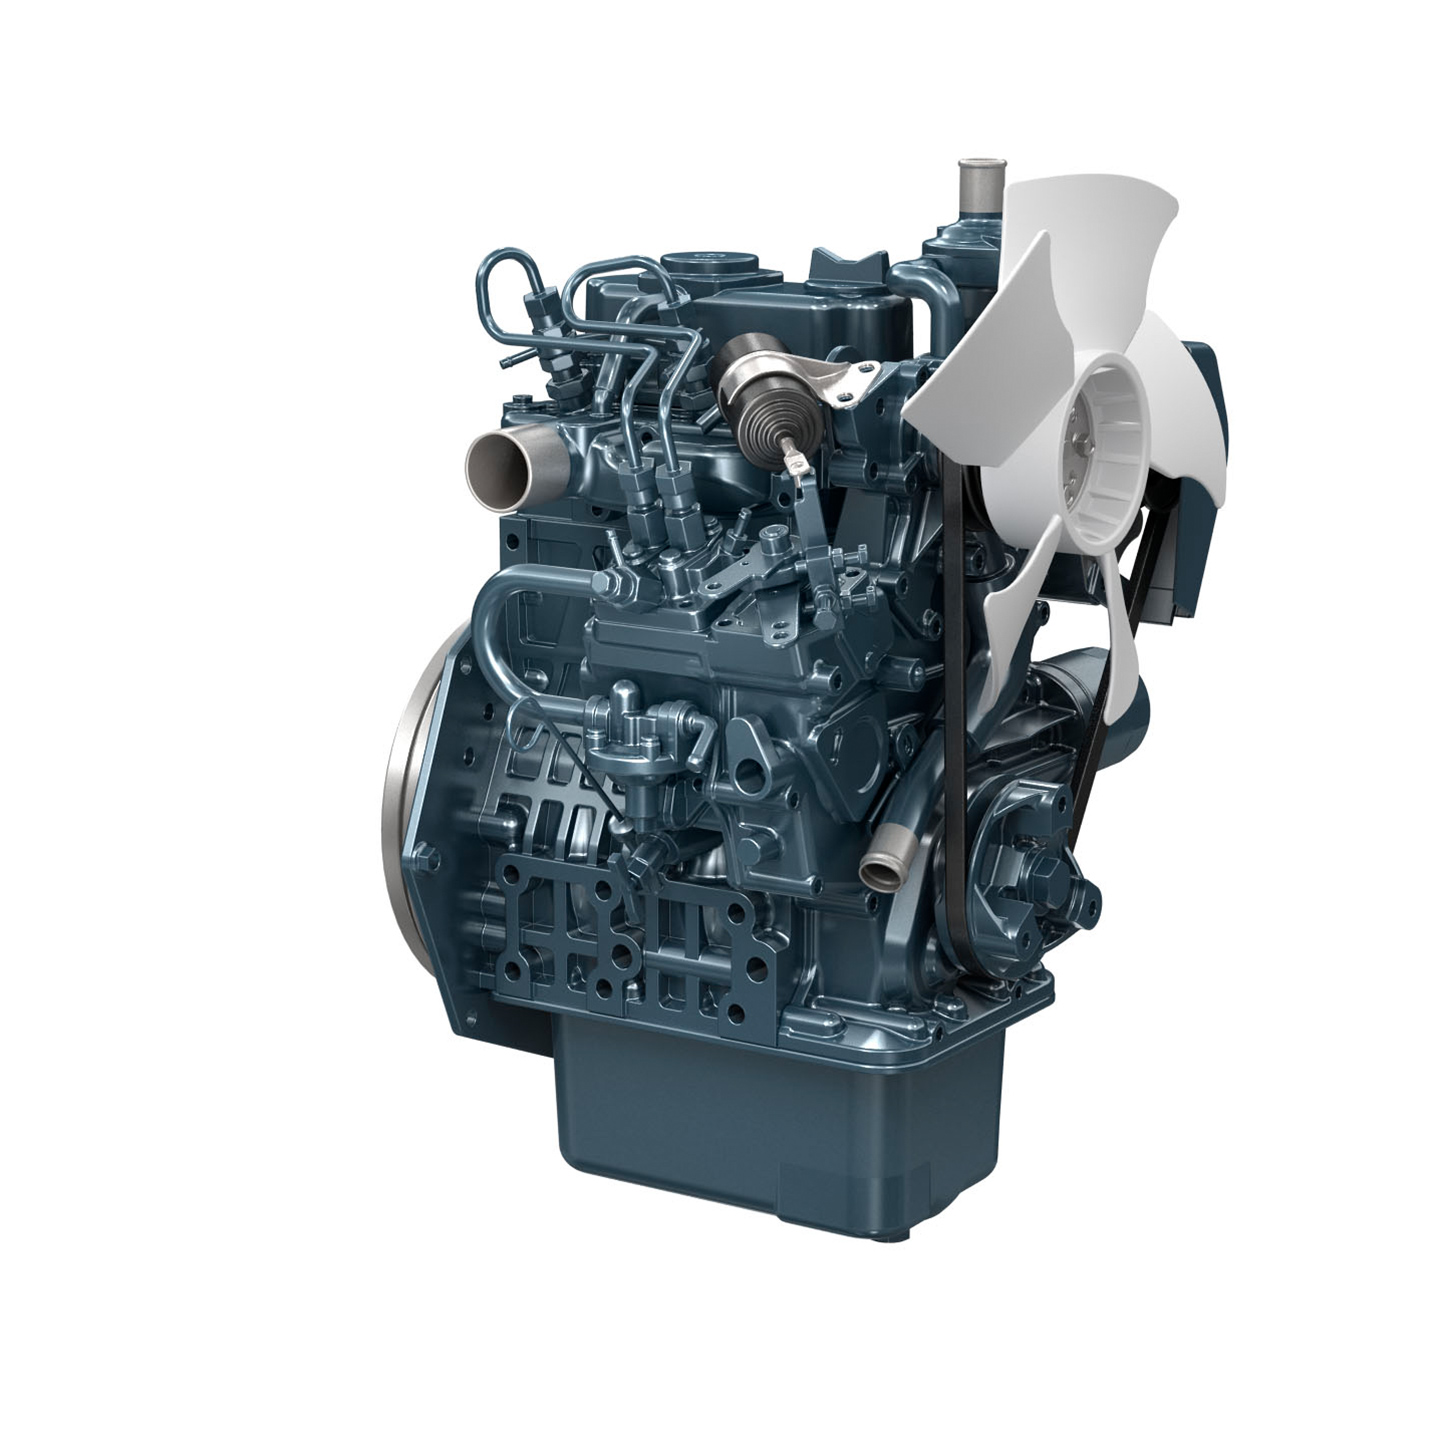 クボタ V1505 ディーゼル4気筒エンジン エンジン停止ソレノイド 